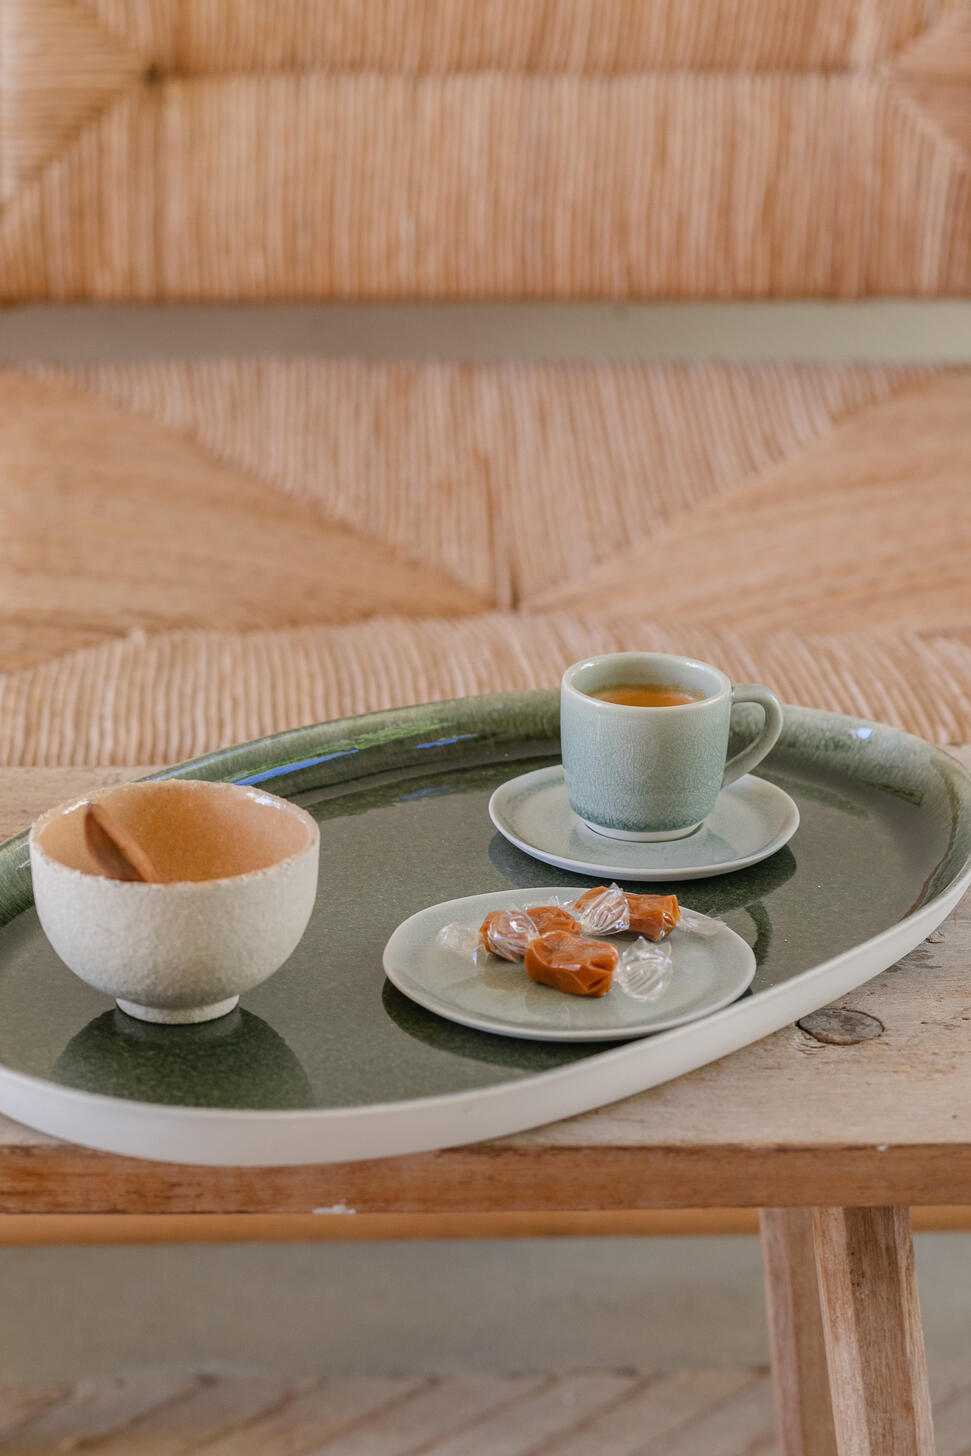 Espresso cup & saucer Maguelone genêt high end ceramics